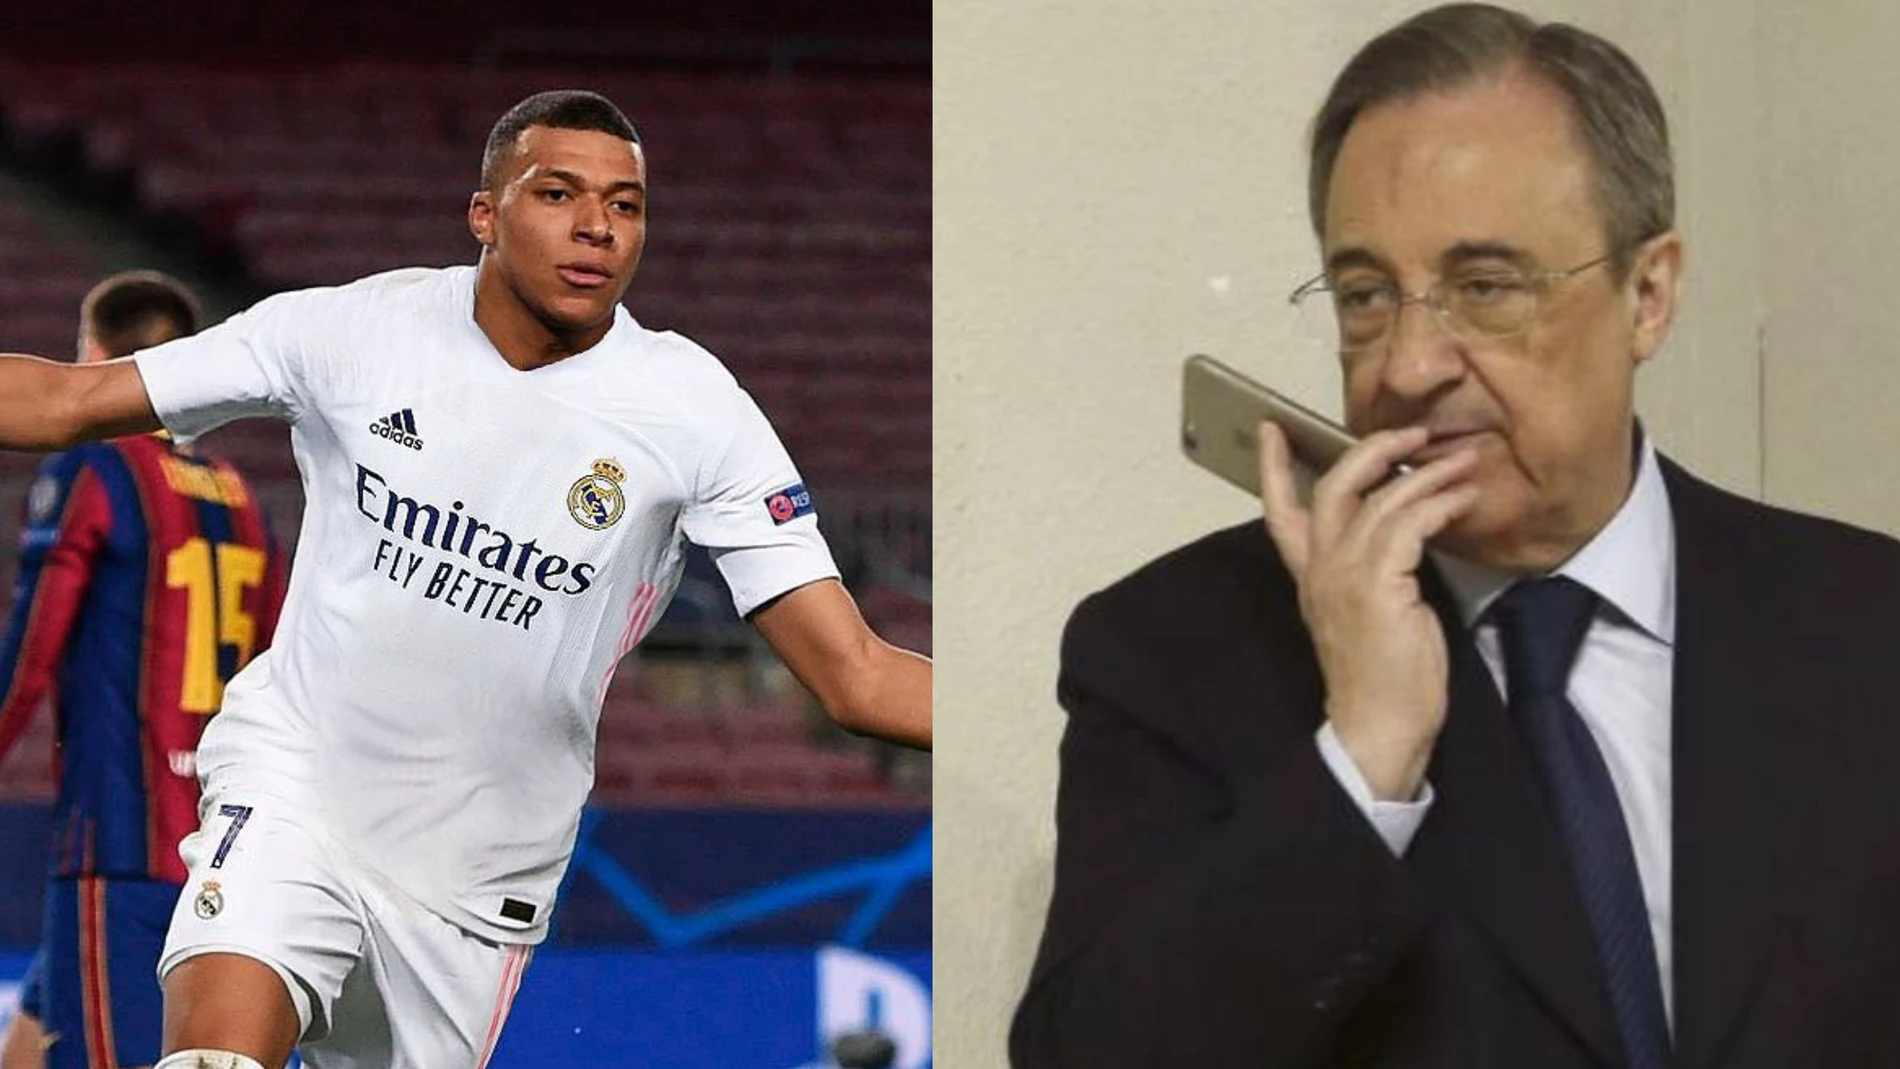 'Mesazhi që ‘tronditi’ tifozët dhe klubin madrilen', ja cfarë i shkruajti Mbappe presidentit të Real Madrid